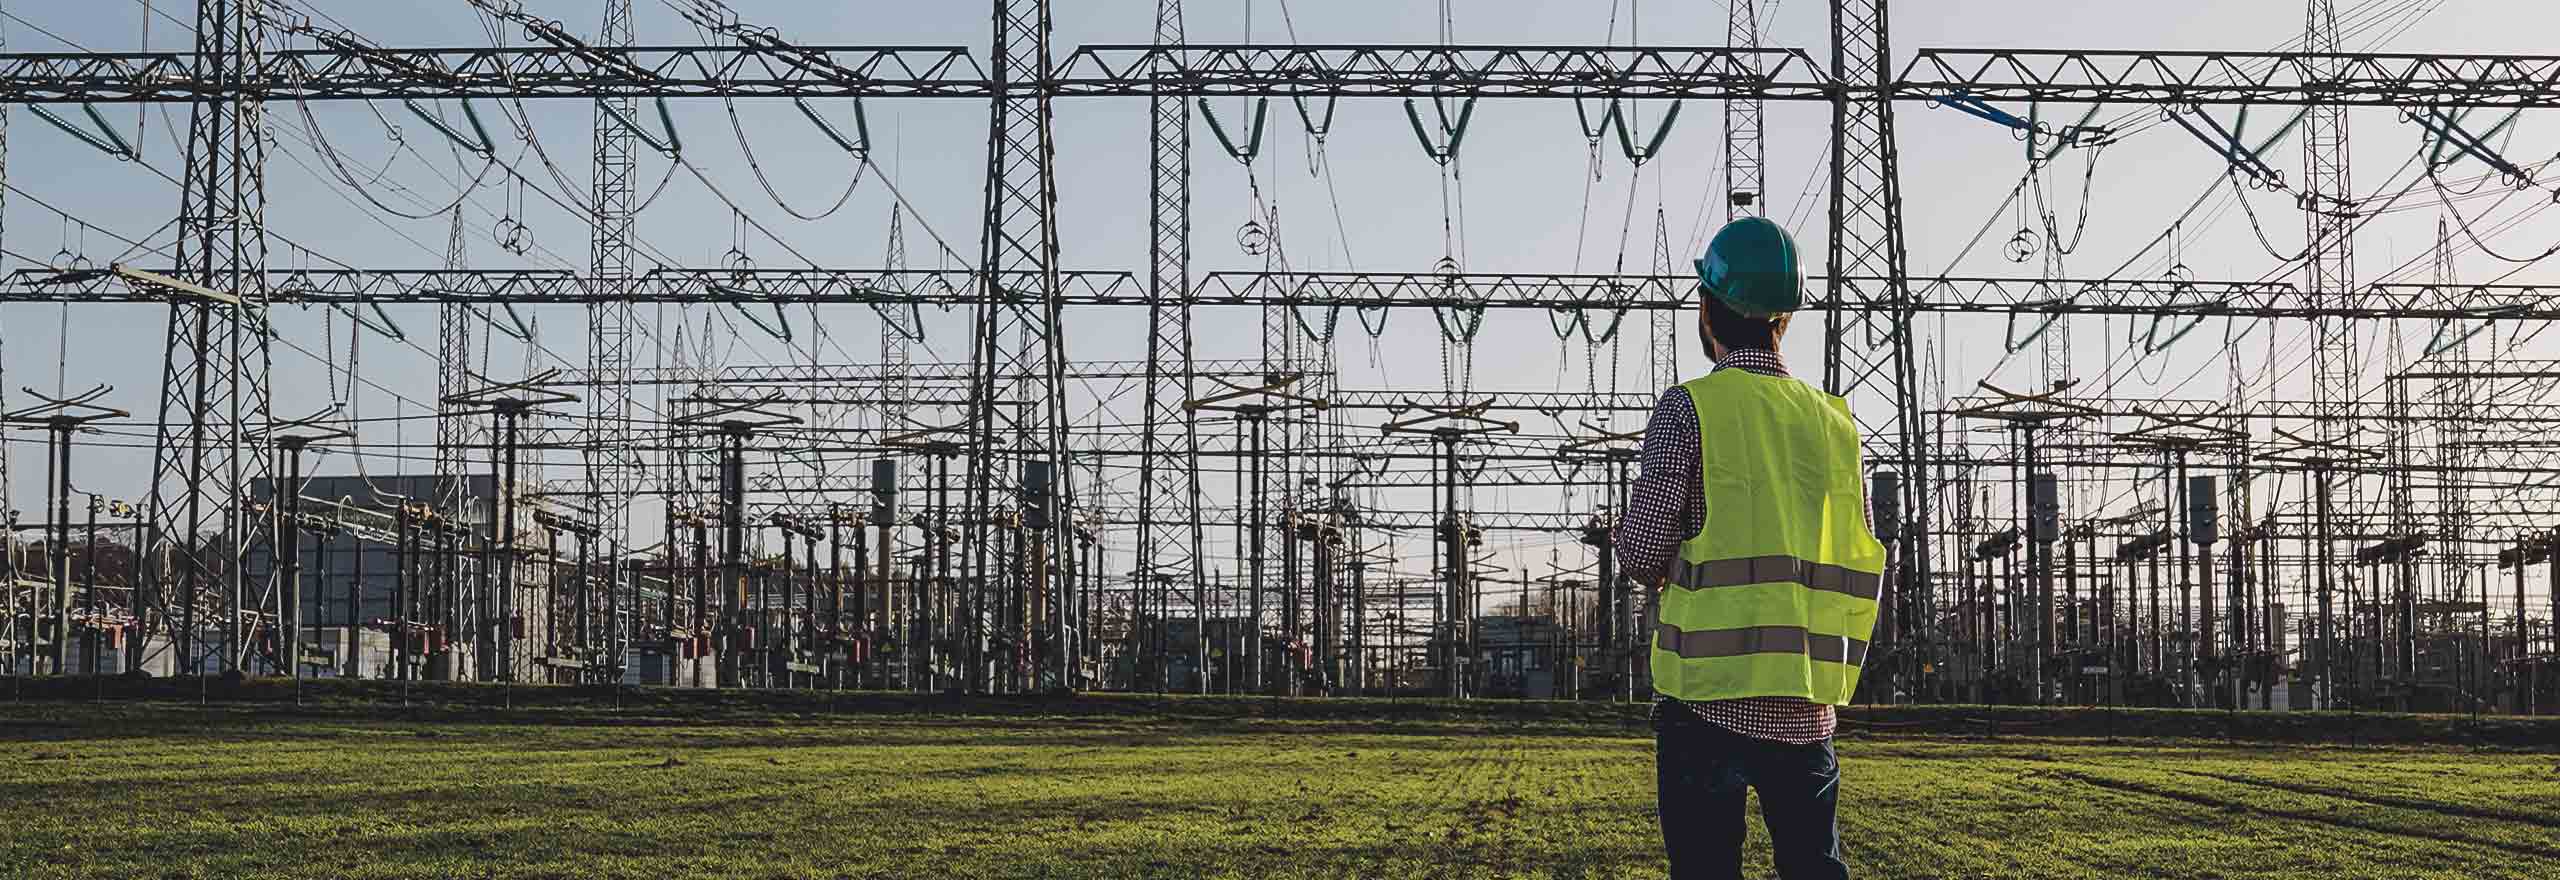 Ingénieur électricien portant un casque et un gilet de sécurité qui travaille sur une tablette pendant le coucher du soleil, à proximité d’une centrale électrique de lignes haute tension. 